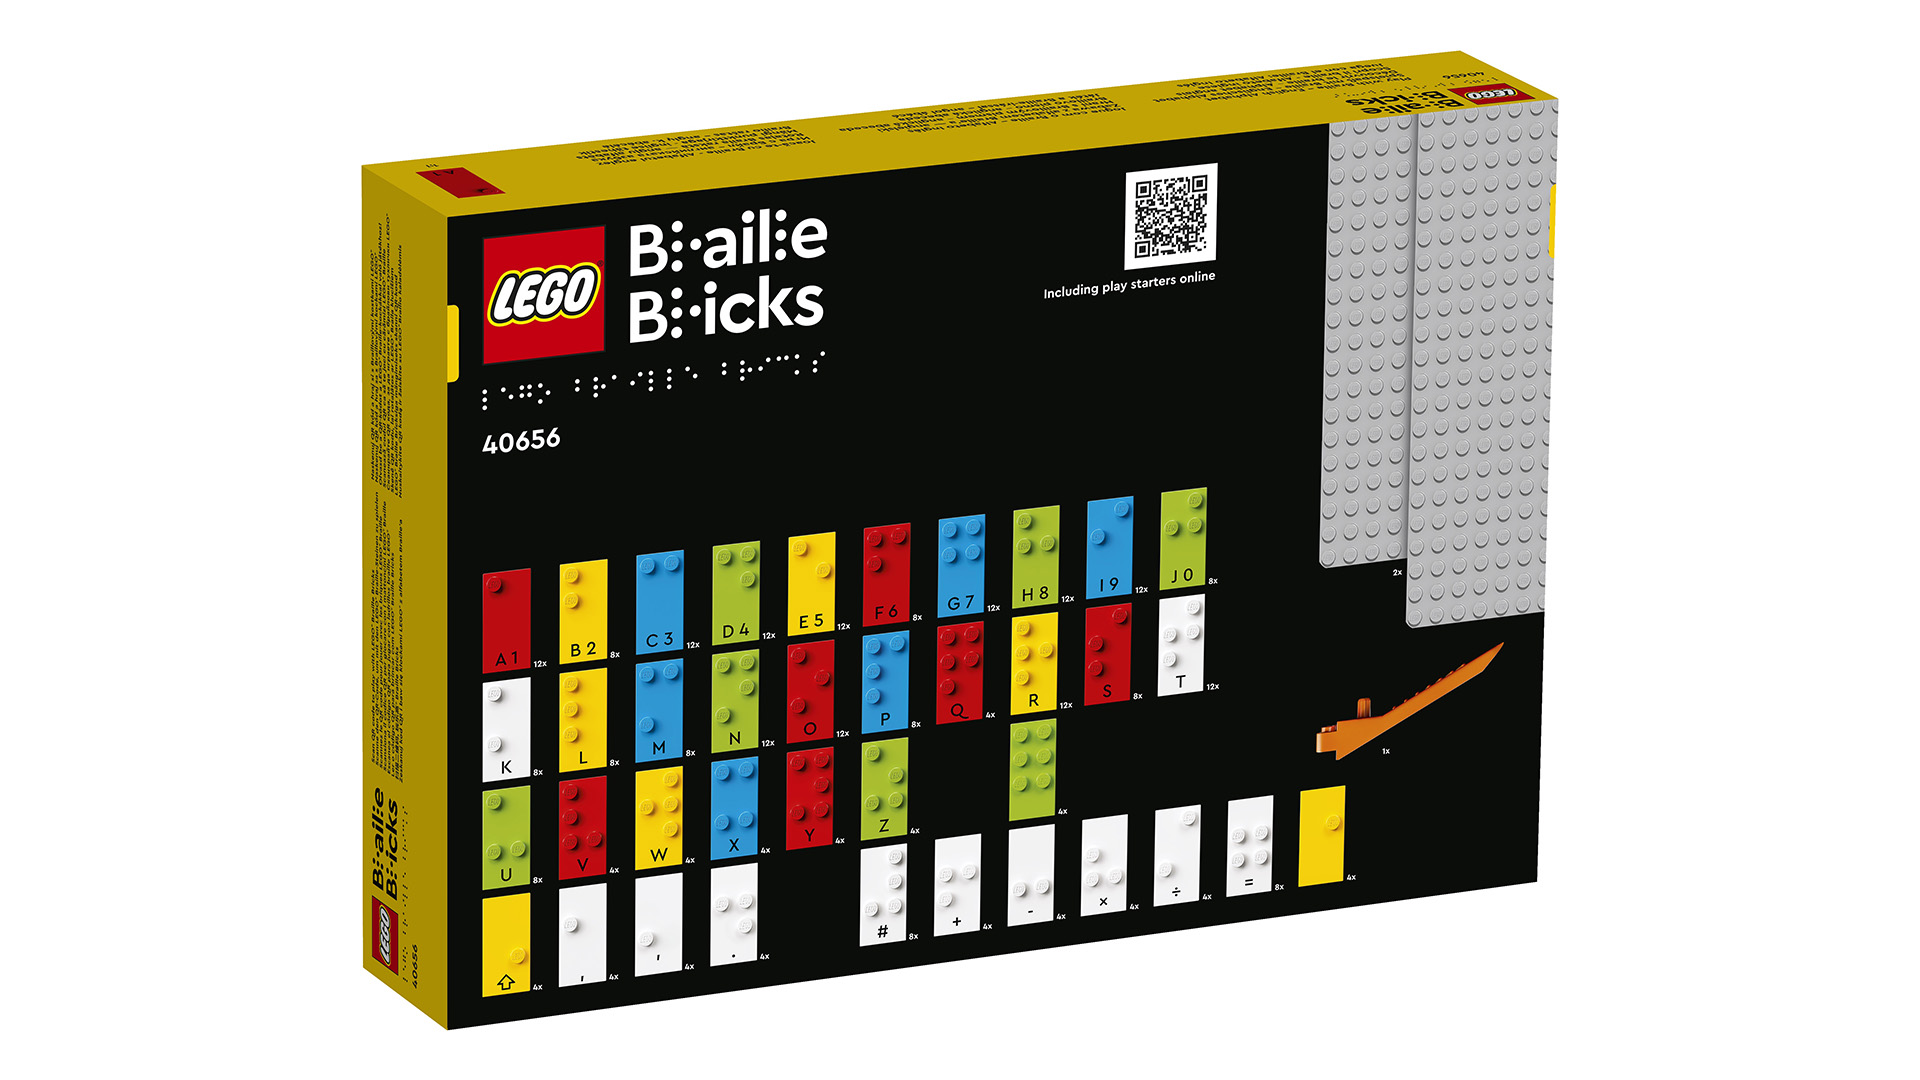 LEGO Braille _40656_Box5_v29